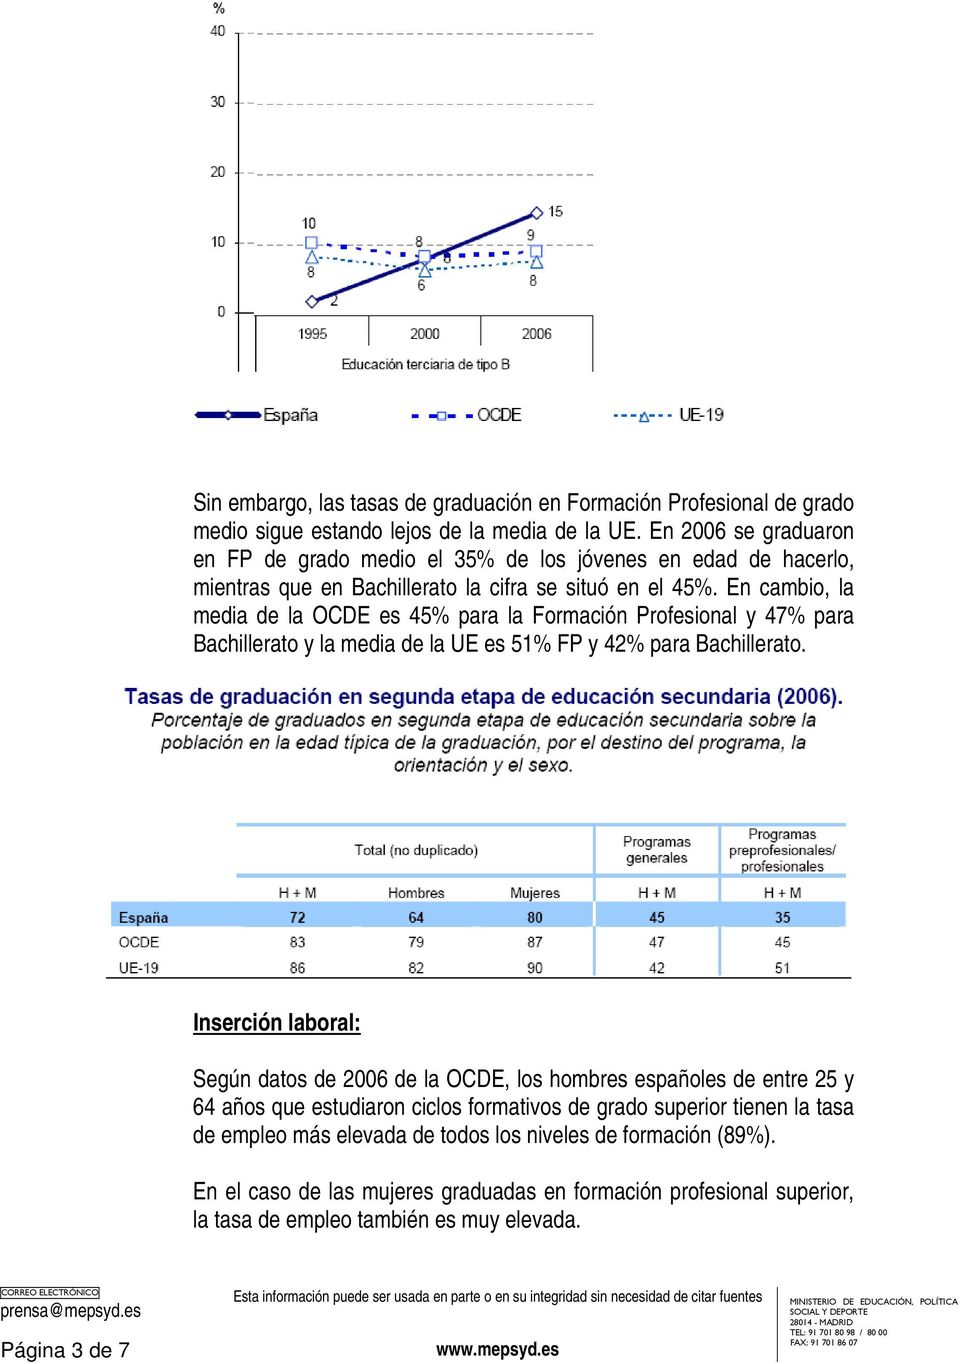 En cambio, la media de la OCDE es 45% para la Formación Profesional y 47% para Bachillerato y la media de la UE es 51% FP y 42% para Bachillerato.